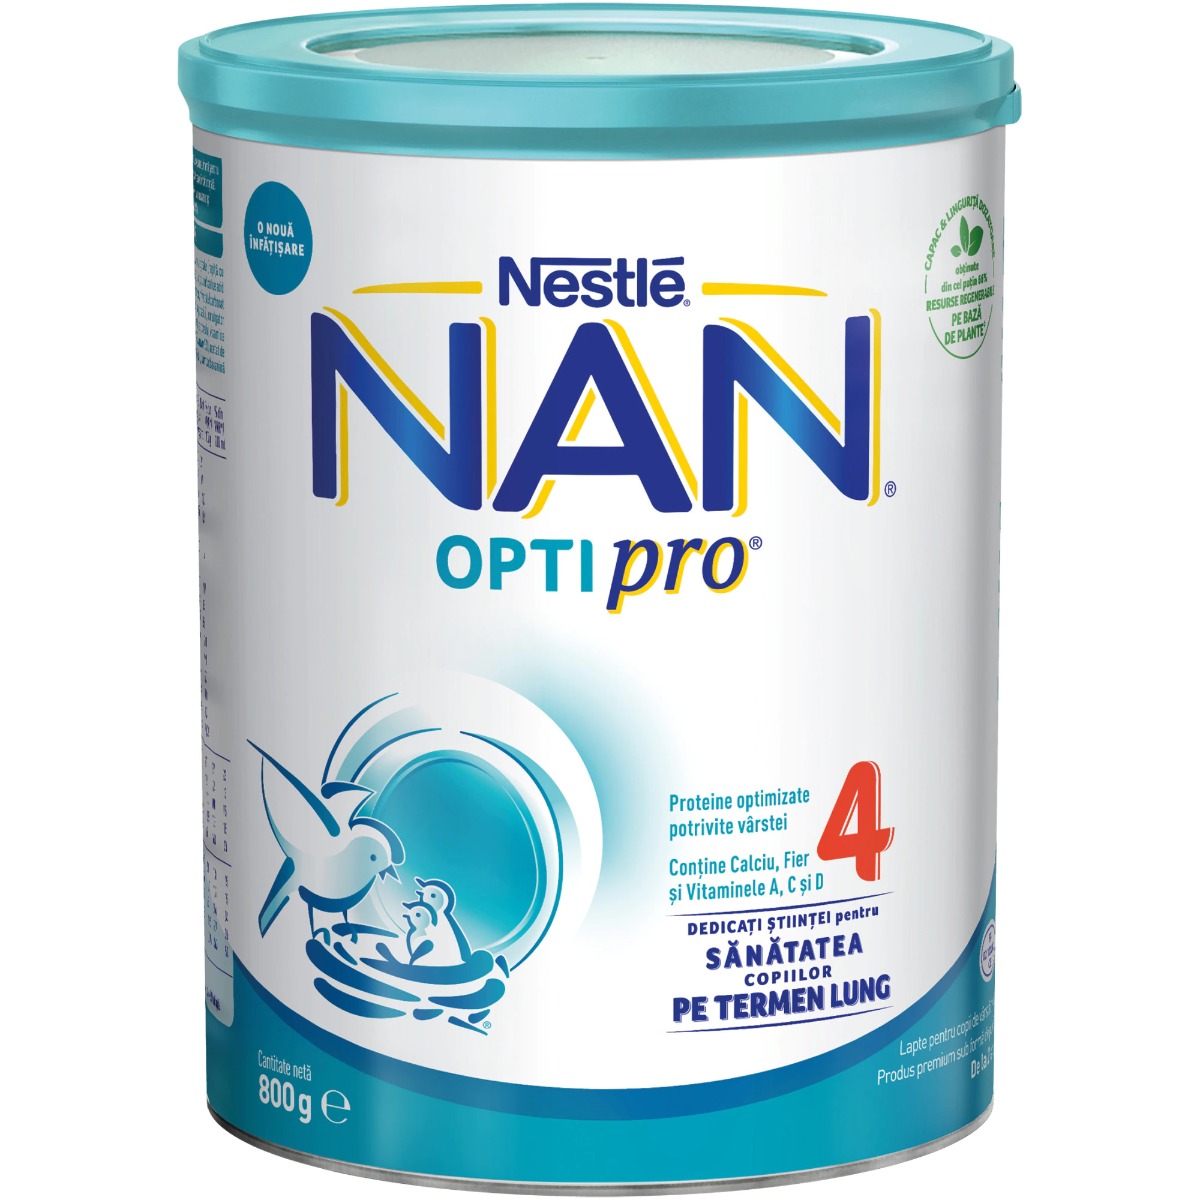 Lapte praf NAN 4 Optipro, 800g, Nestle